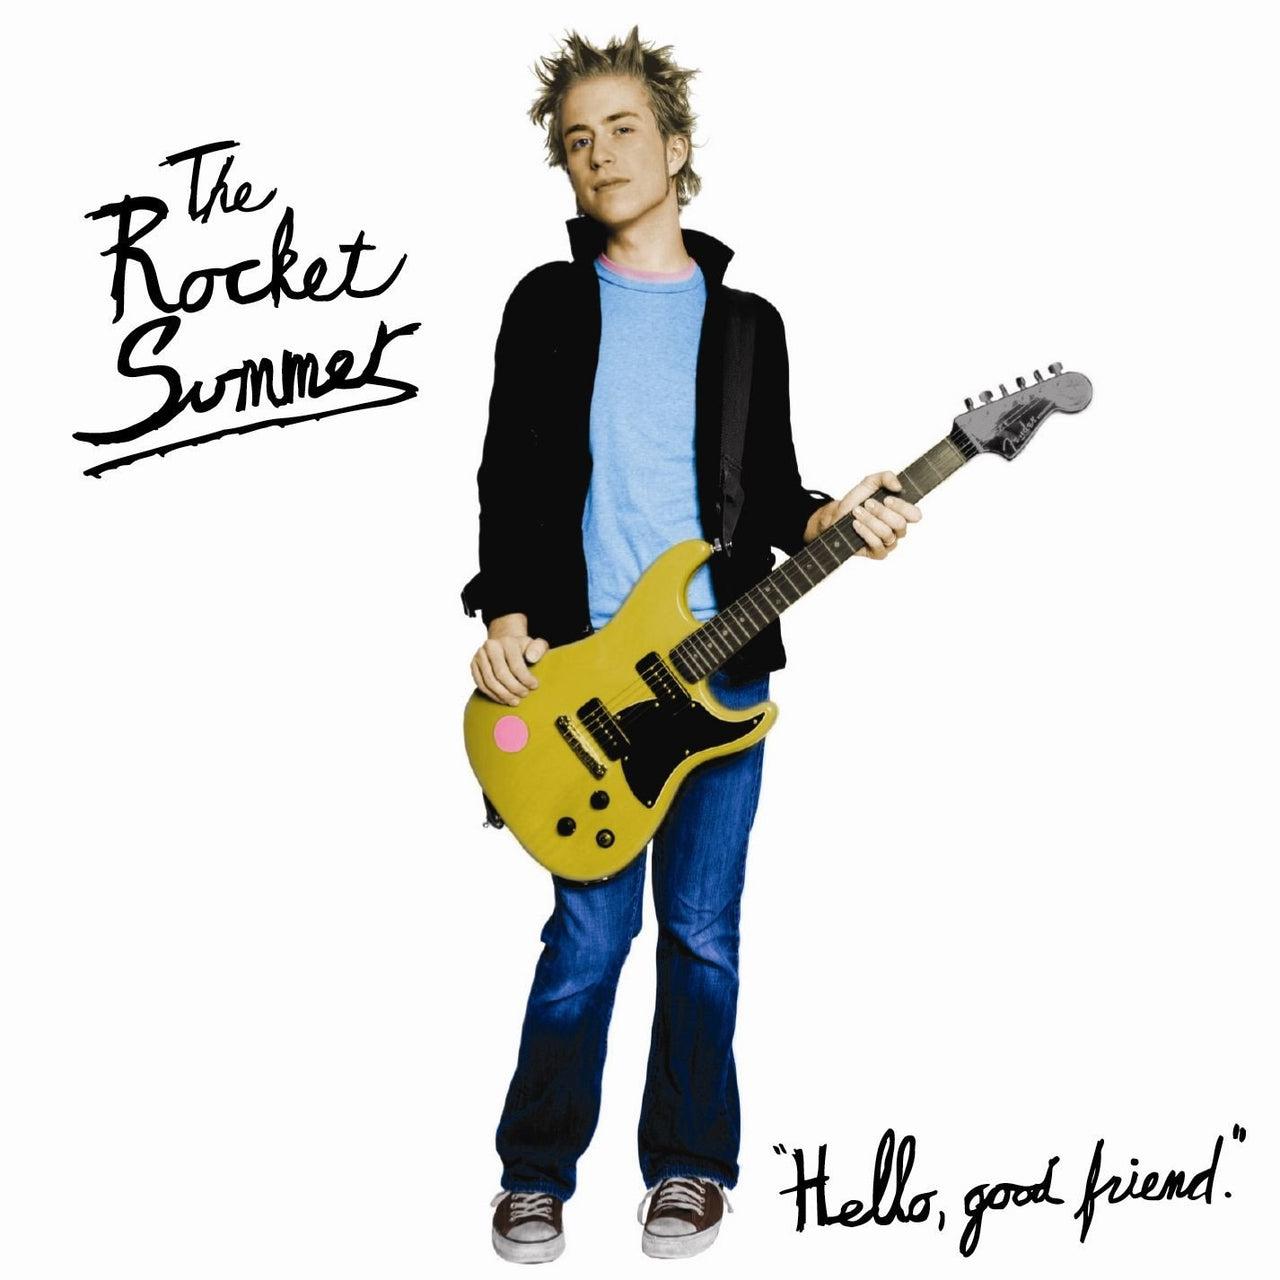 The Rocket Summer: Hello, Good Friend CD